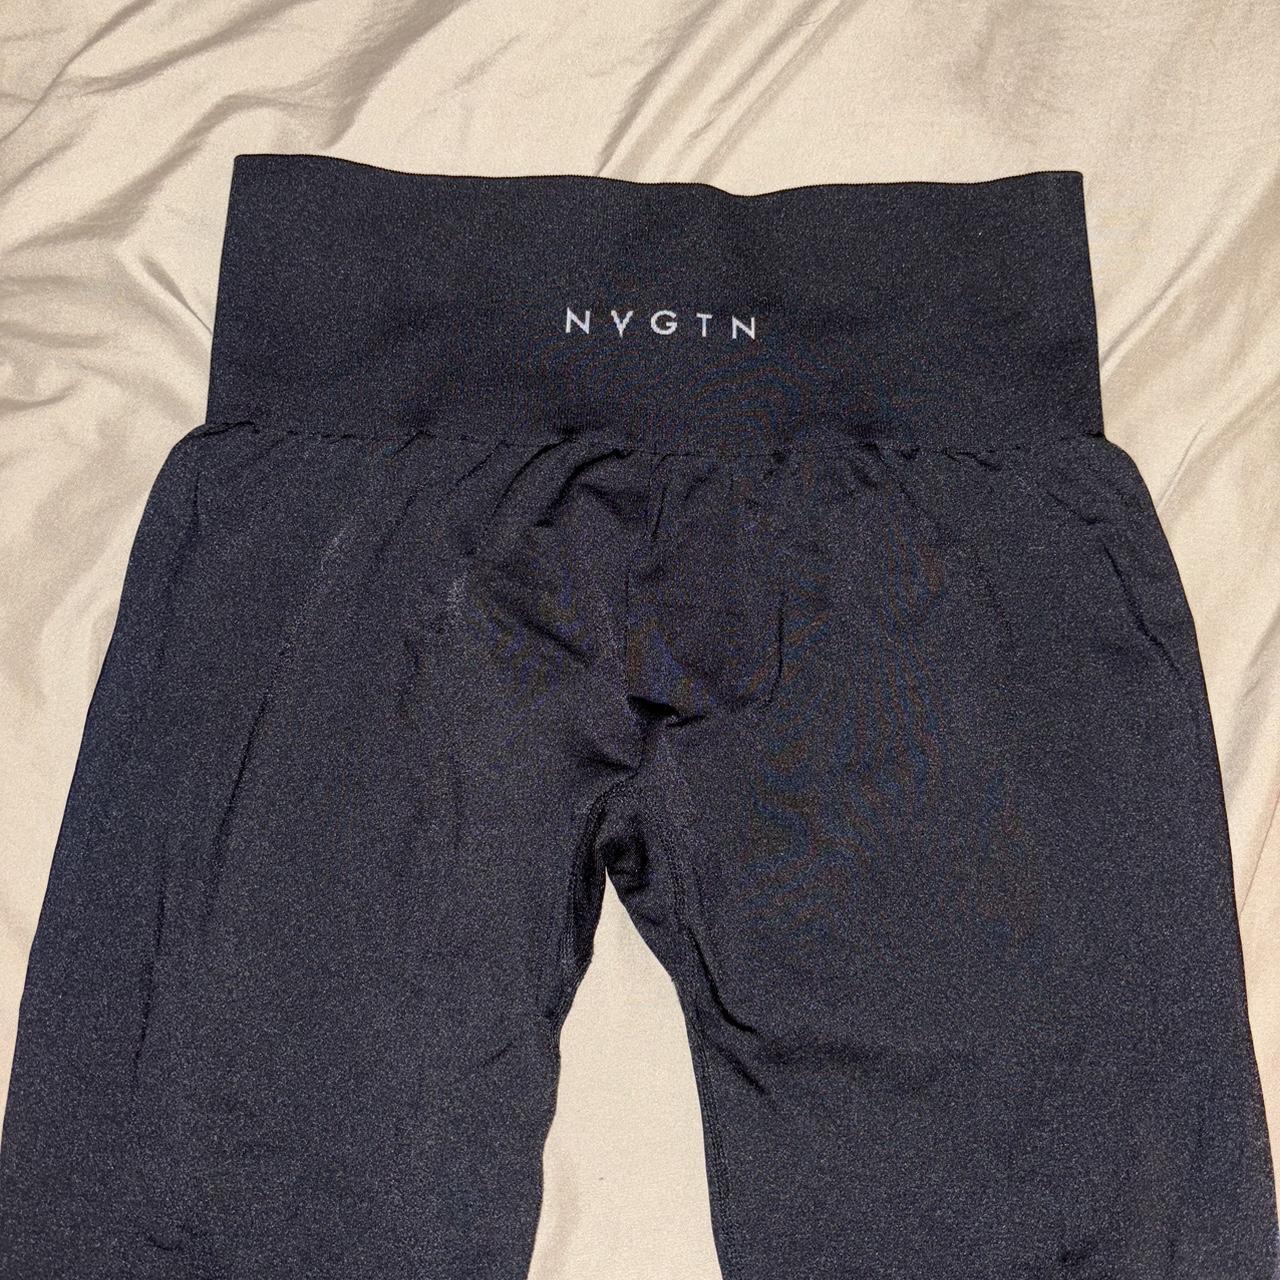 Grey speckled NVGTN leggings #NVGTN #gym #leggings - Depop